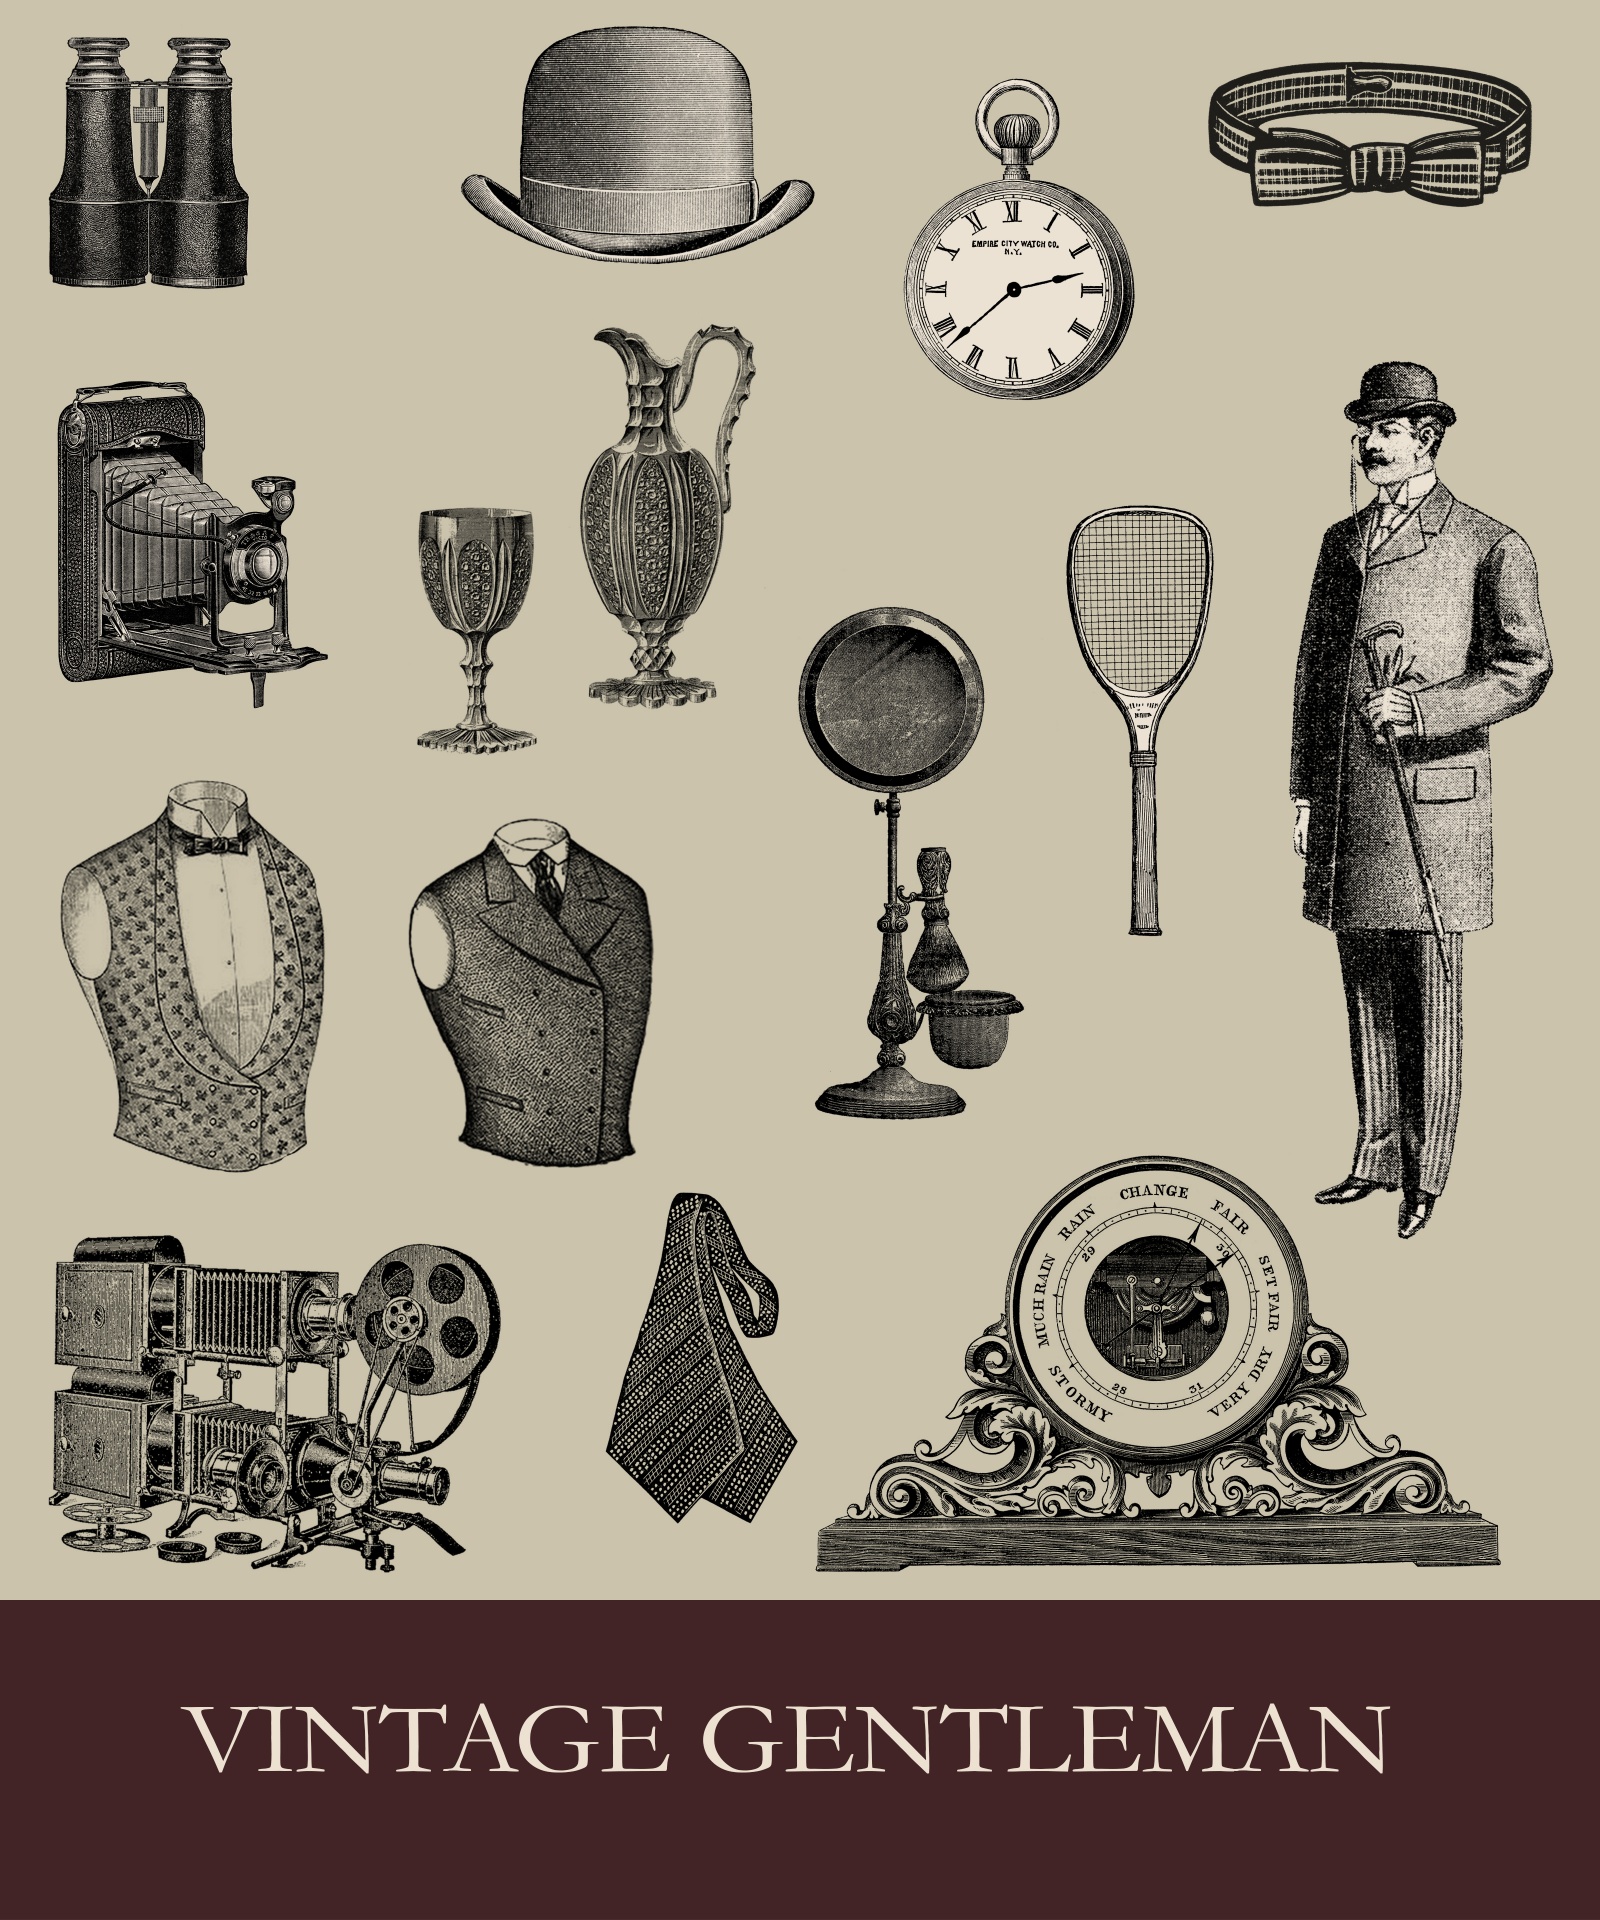 Gentleman Vintage Victorian